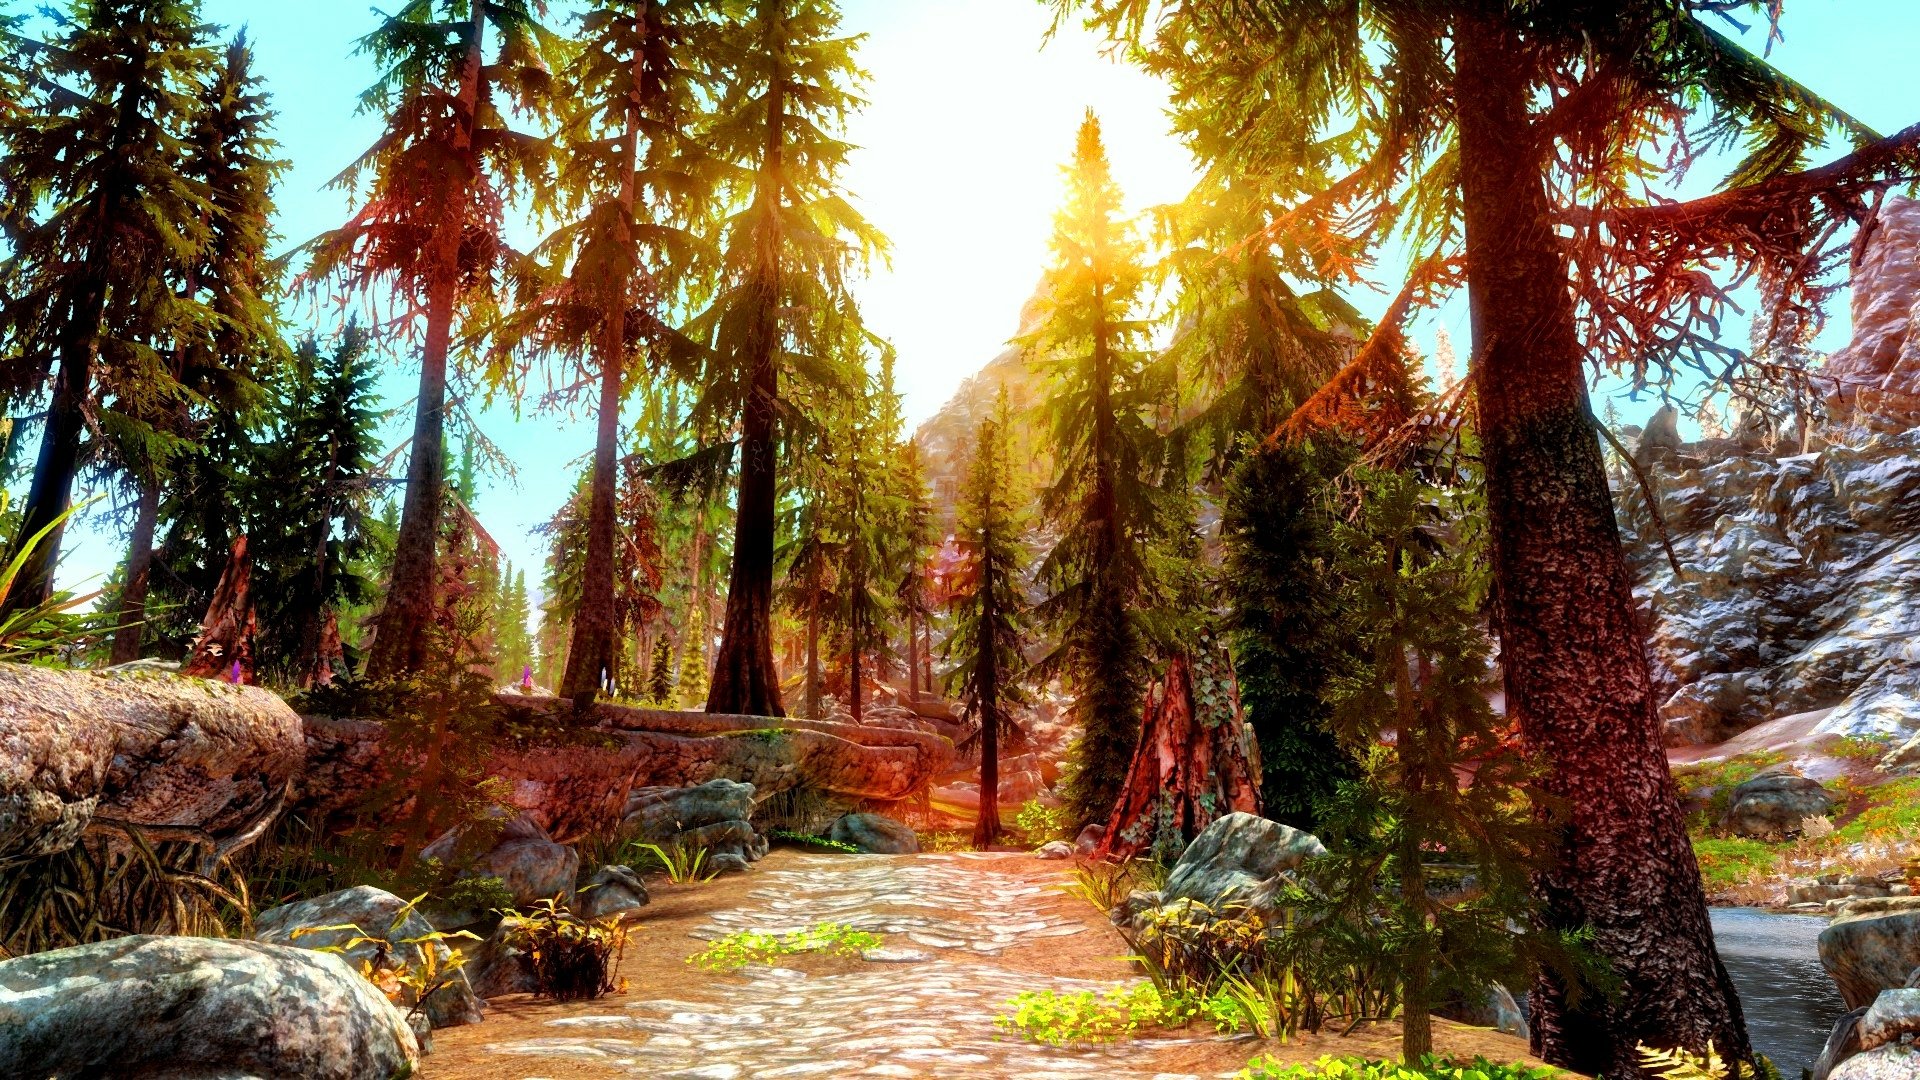 Skyrim: Riverwood Path by viridianeye